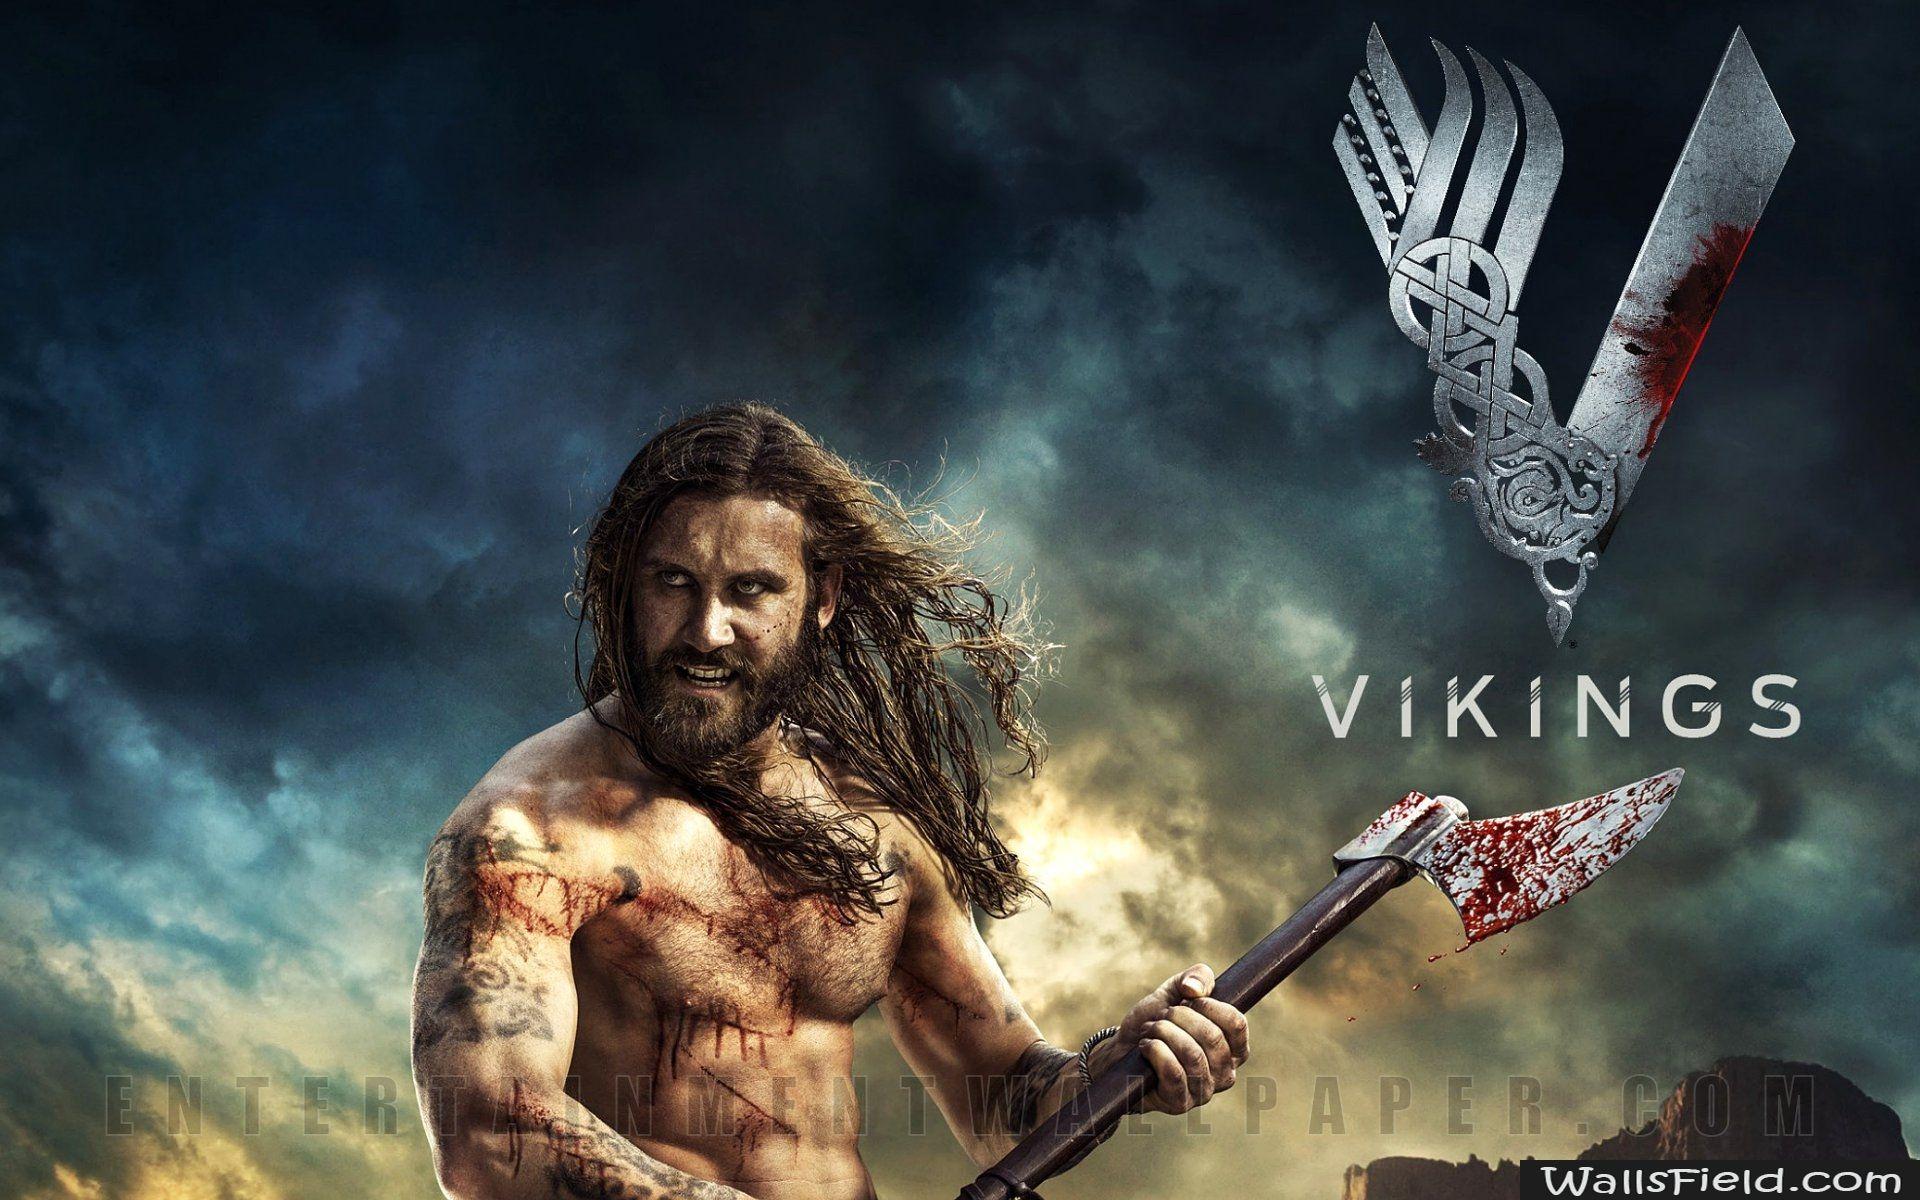 Vikings Wallpaper. TV Series Wallpaper. Vikings